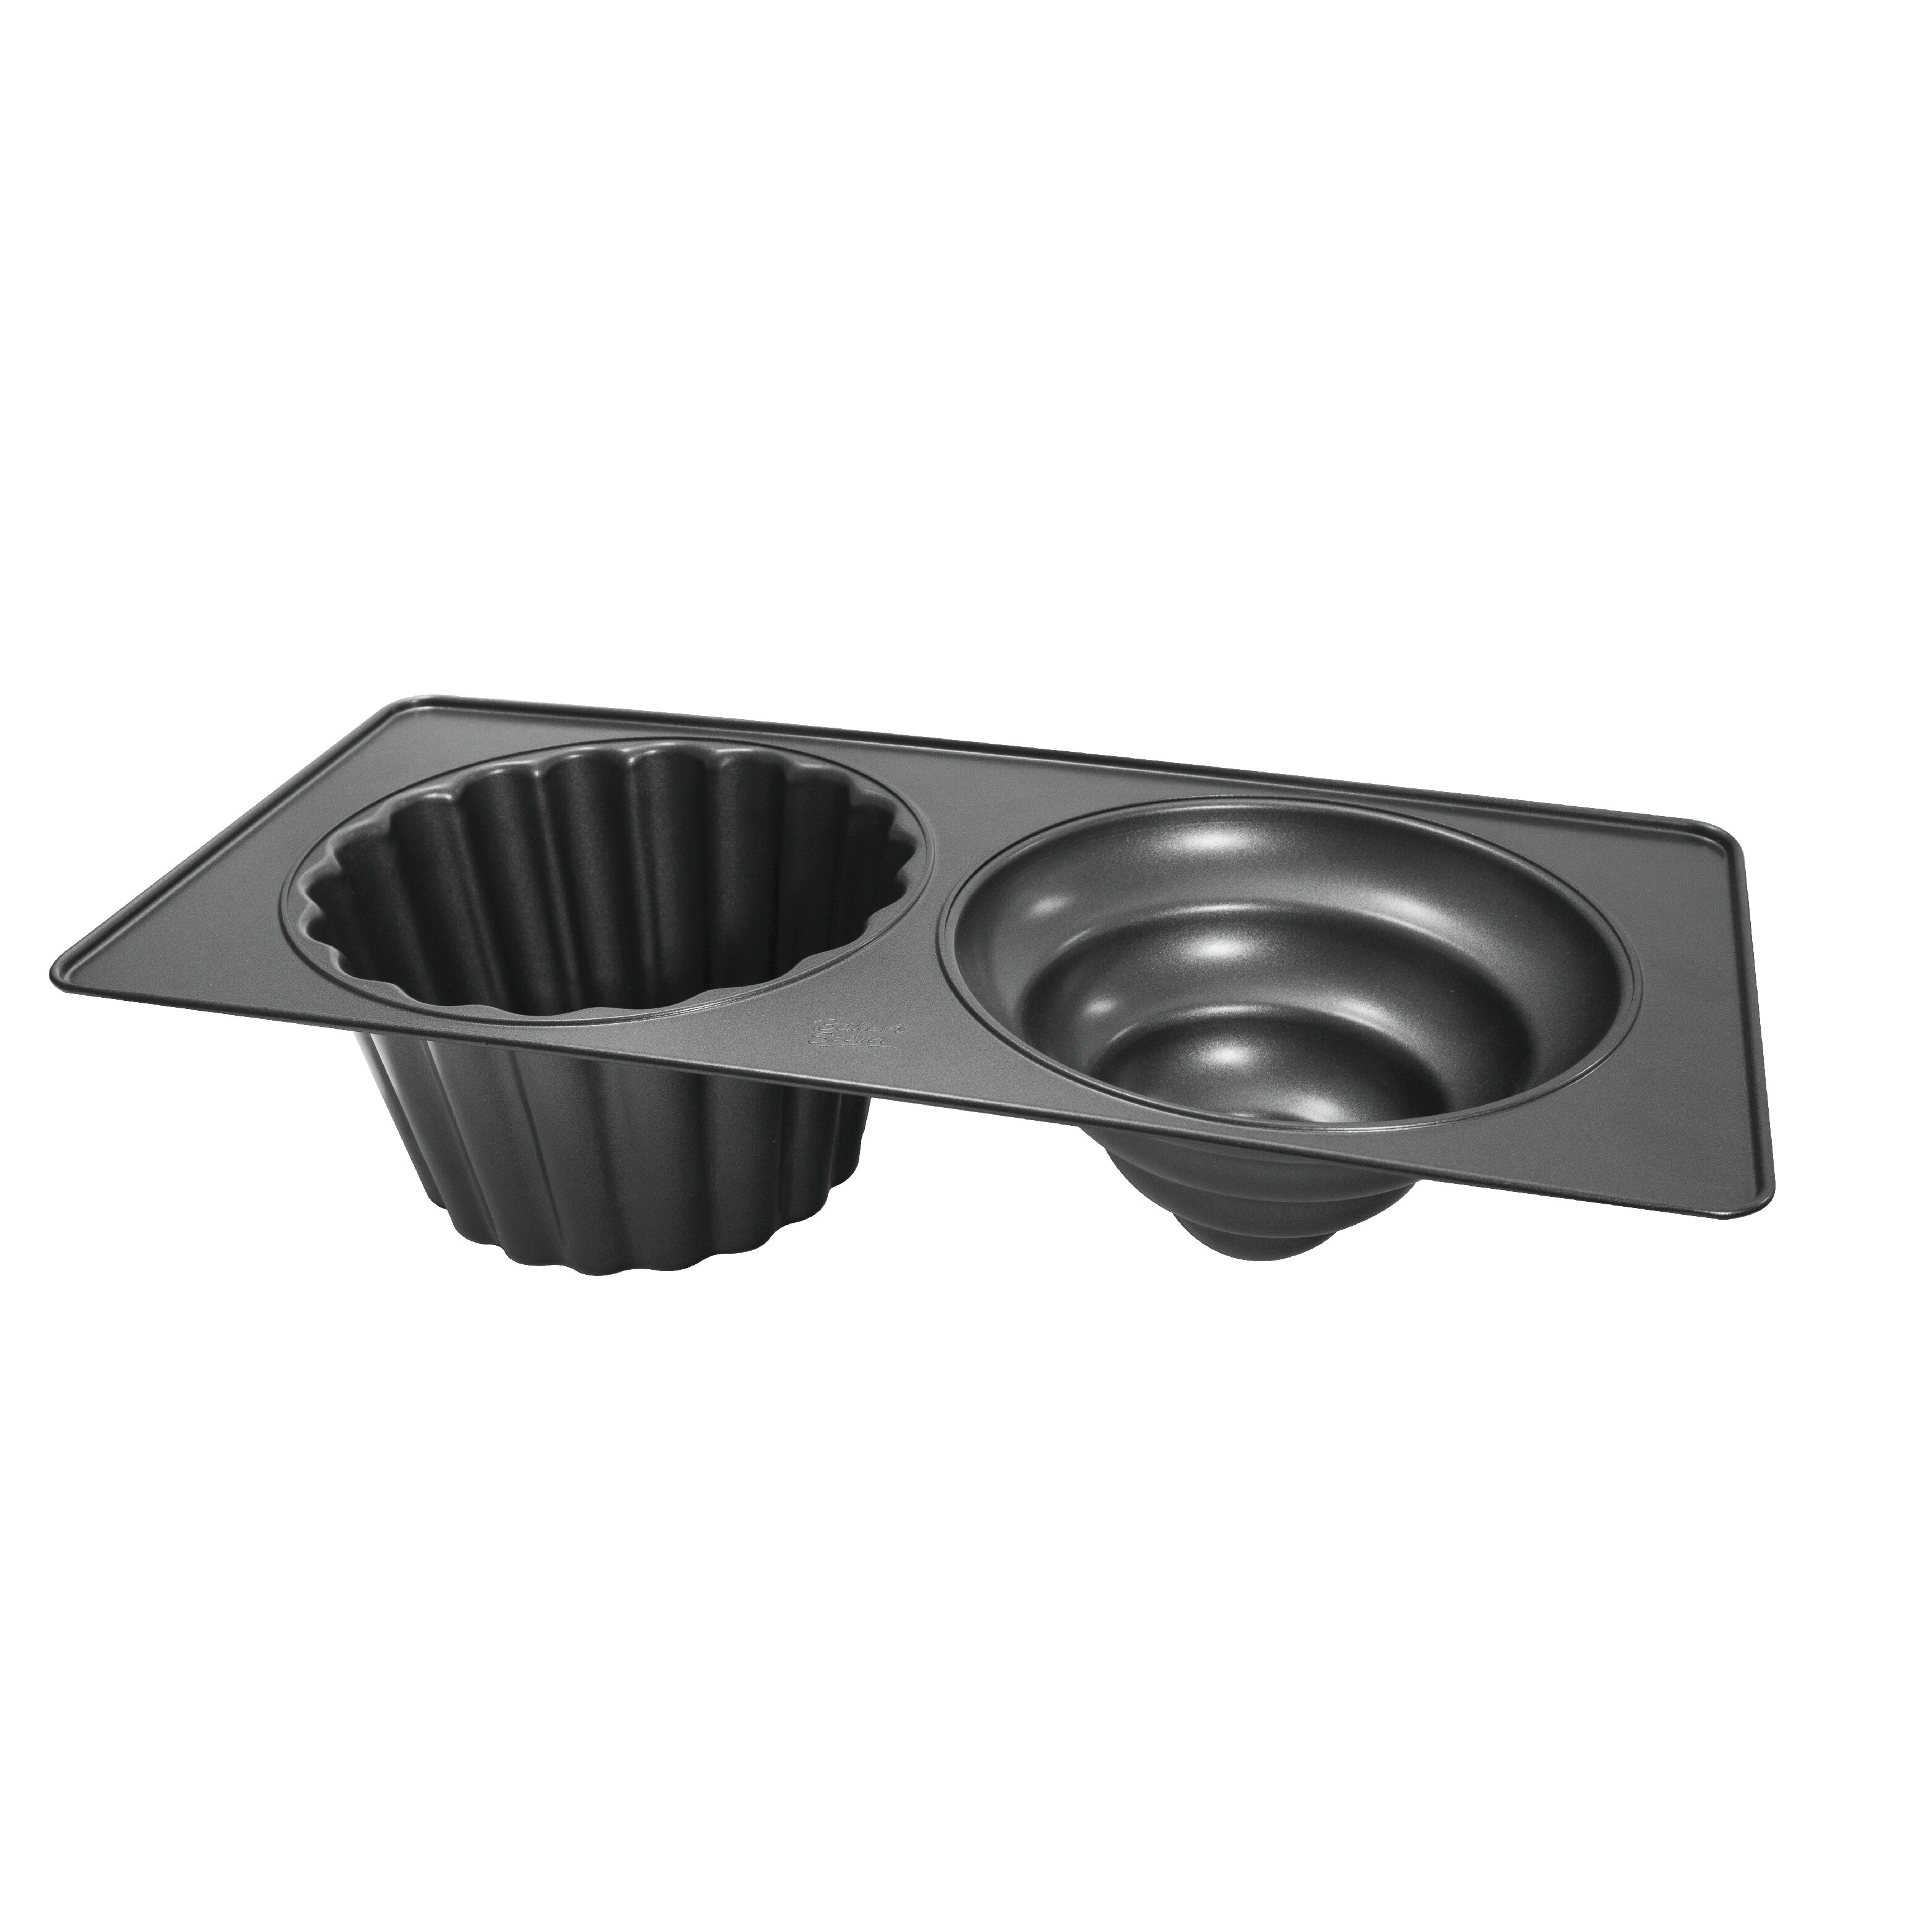 https://assets.wfcdn.com/im/65152472/compr-r85/1831/183179373/bakers-secret-2-cup-non-stick-muffin-pan.jpg